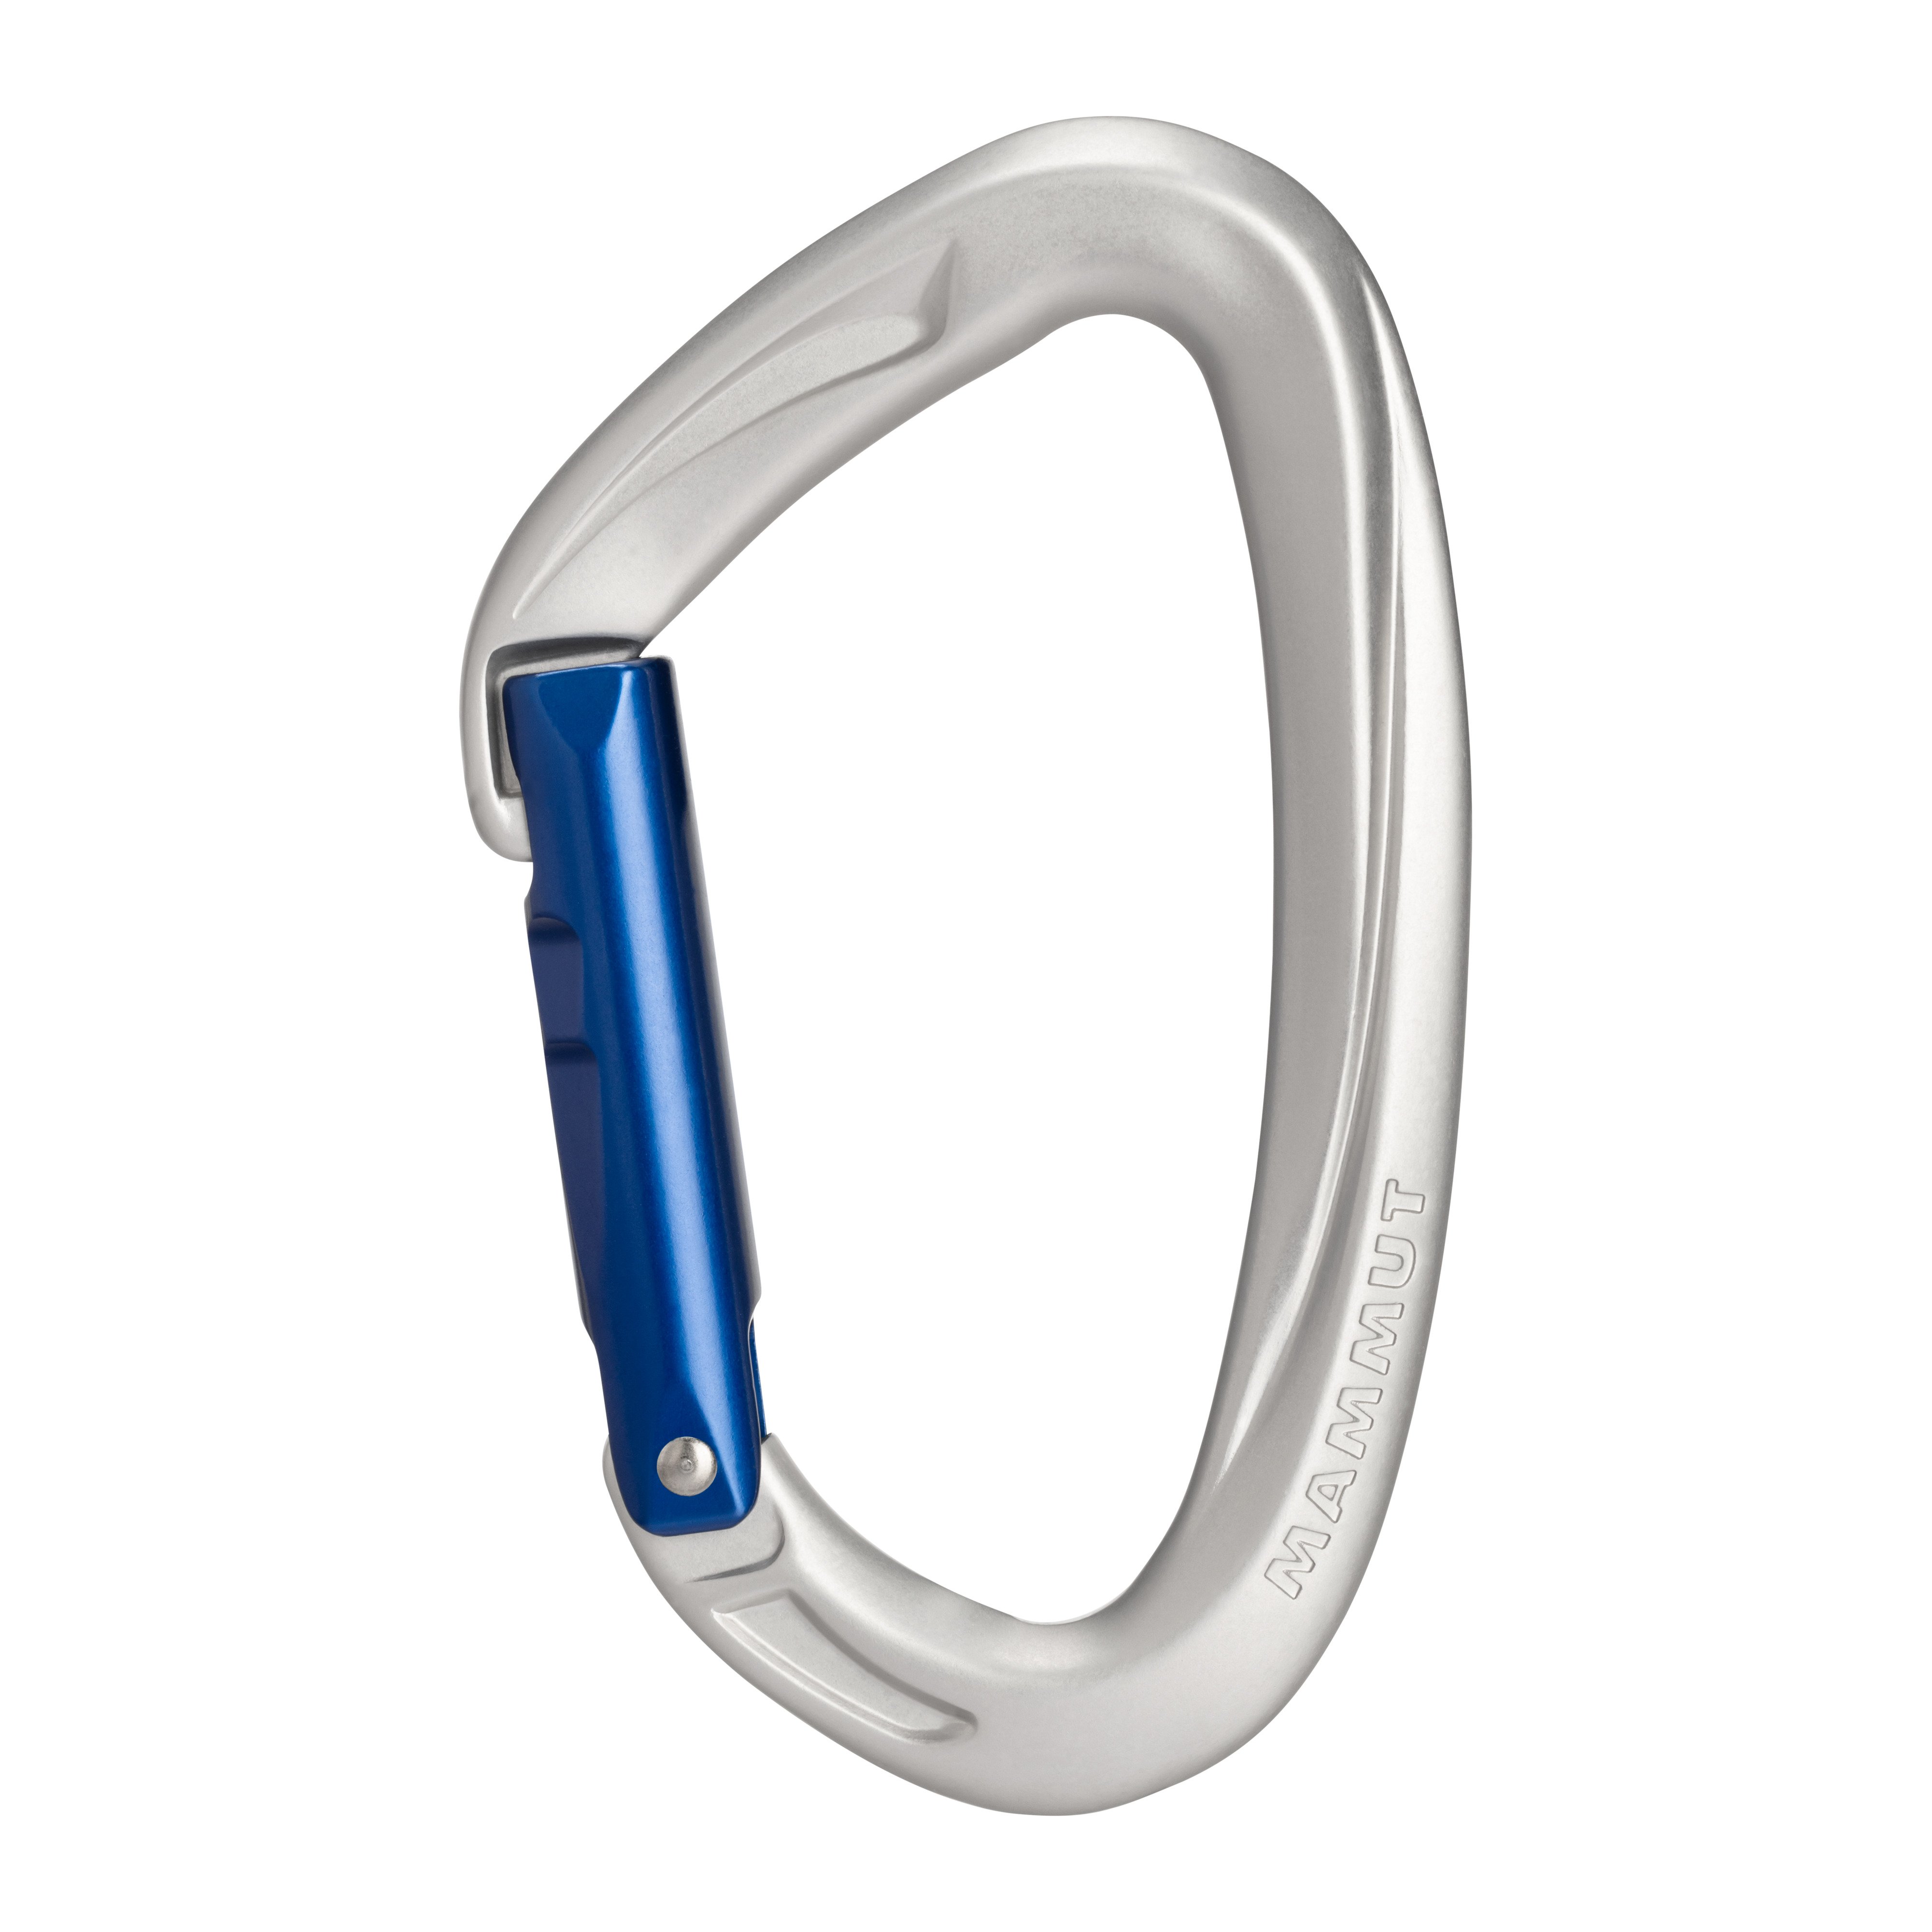 Crag Key Lock - one size product image